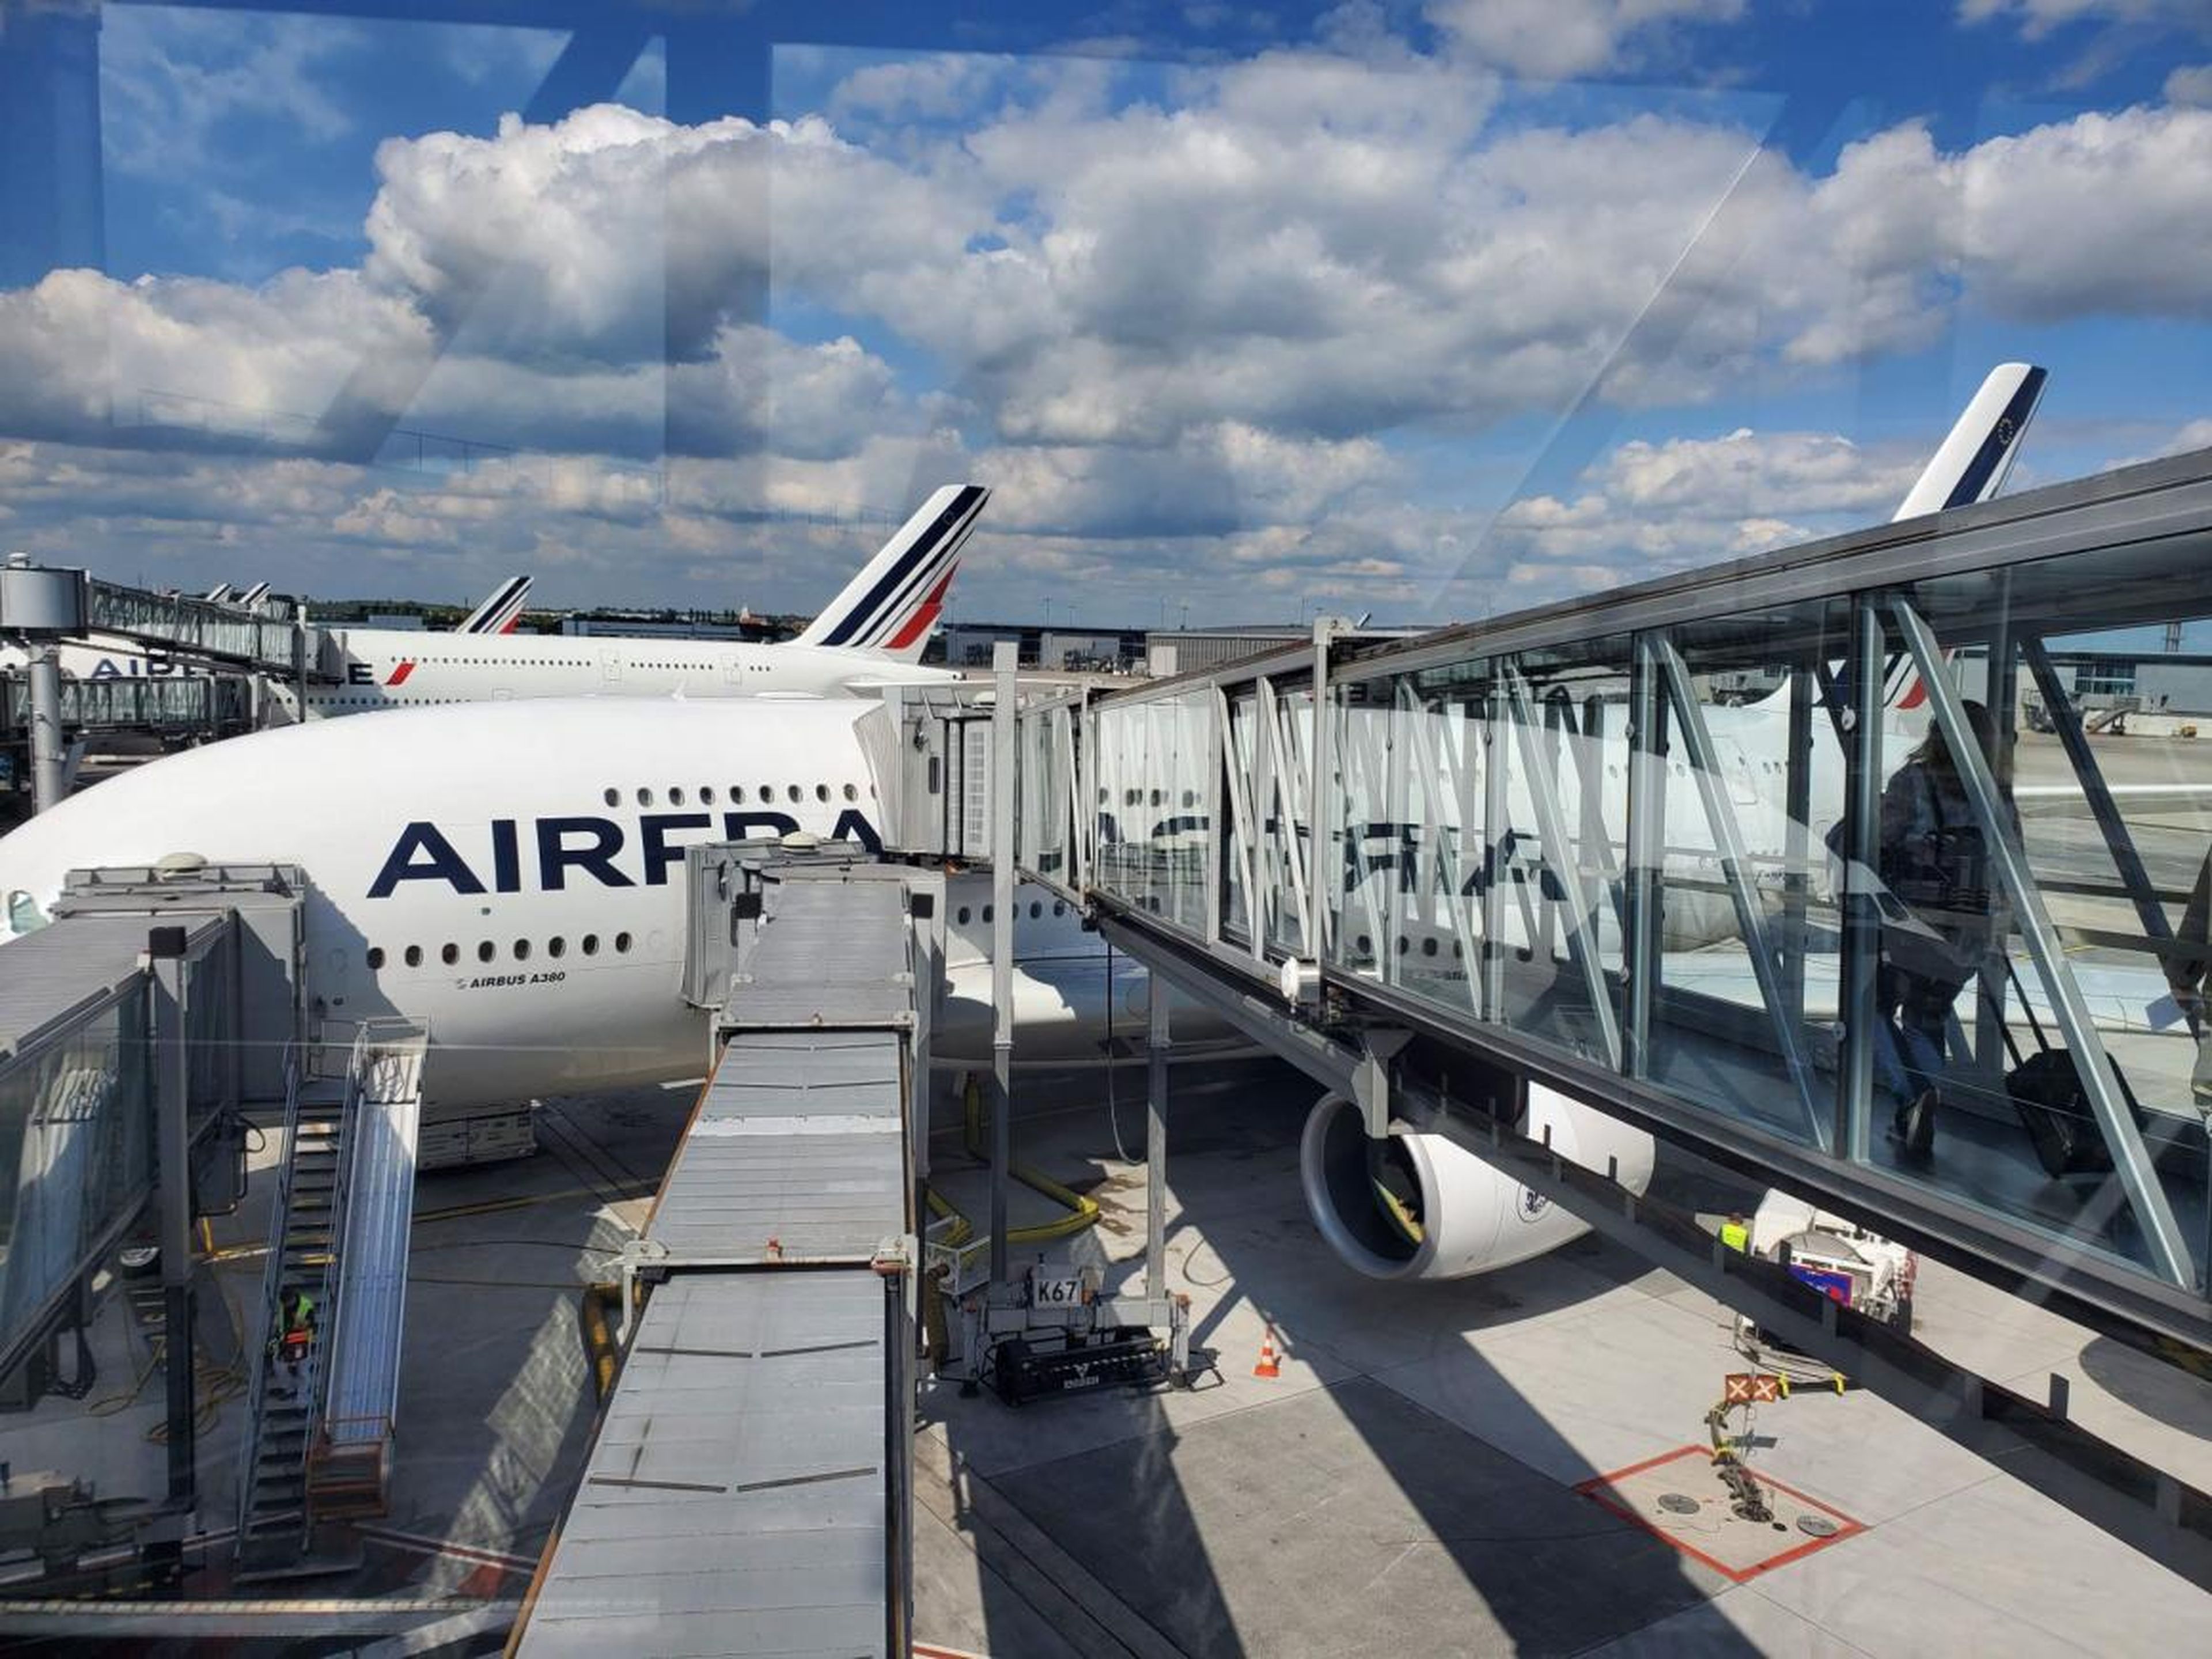 A bordo del France Airbus A380.Boarding an Air France Airbus A380.